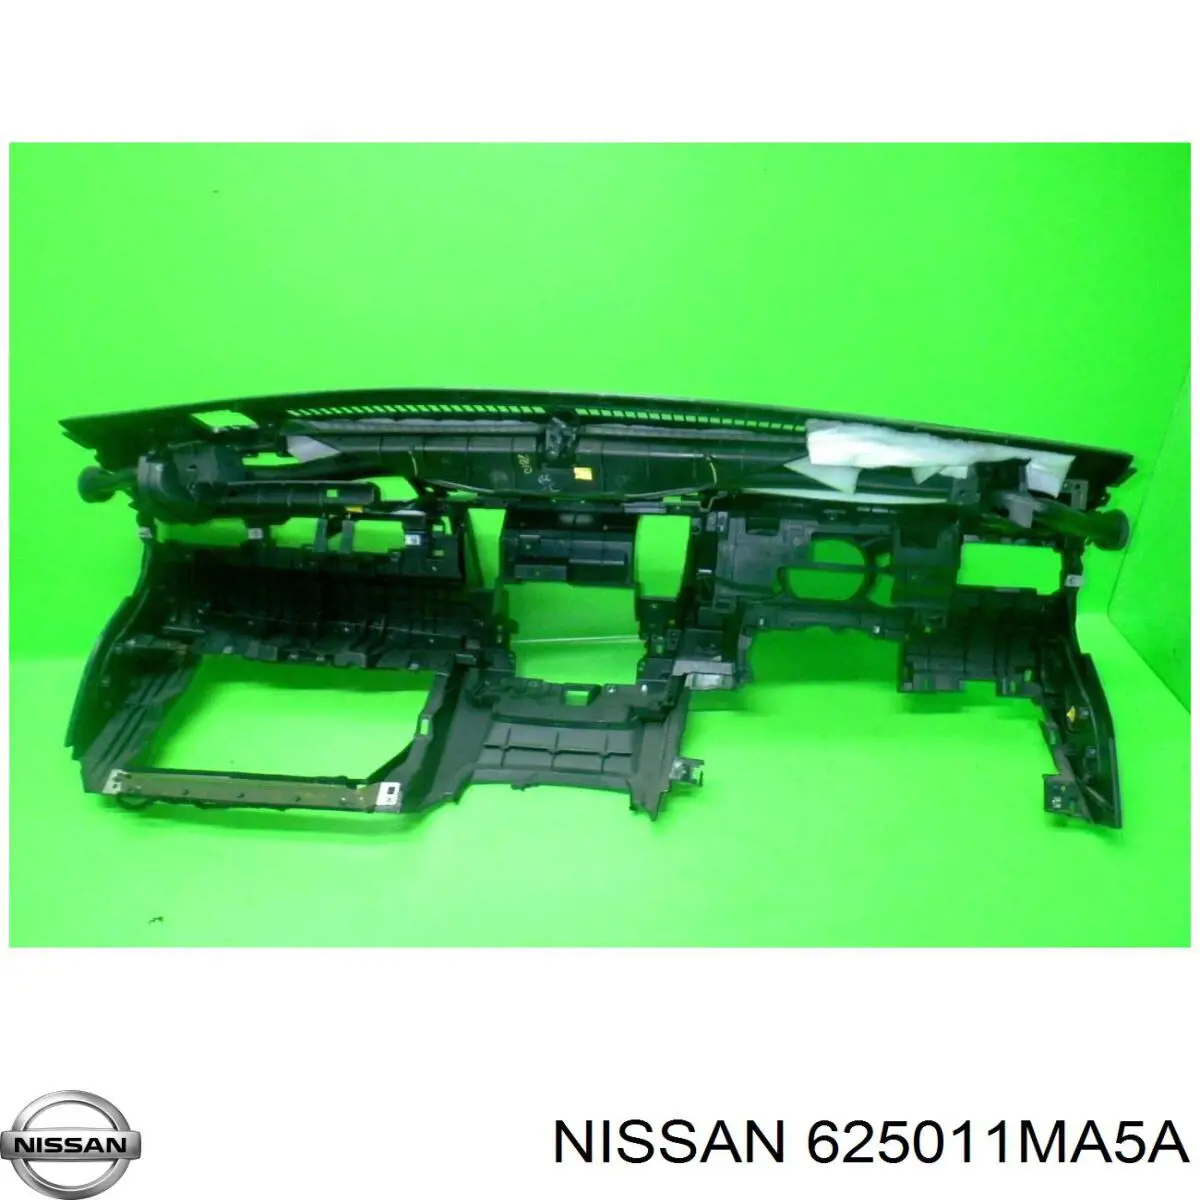 625011MA5A Nissan суппорт радиатора в сборе (монтажная панель крепления фар)